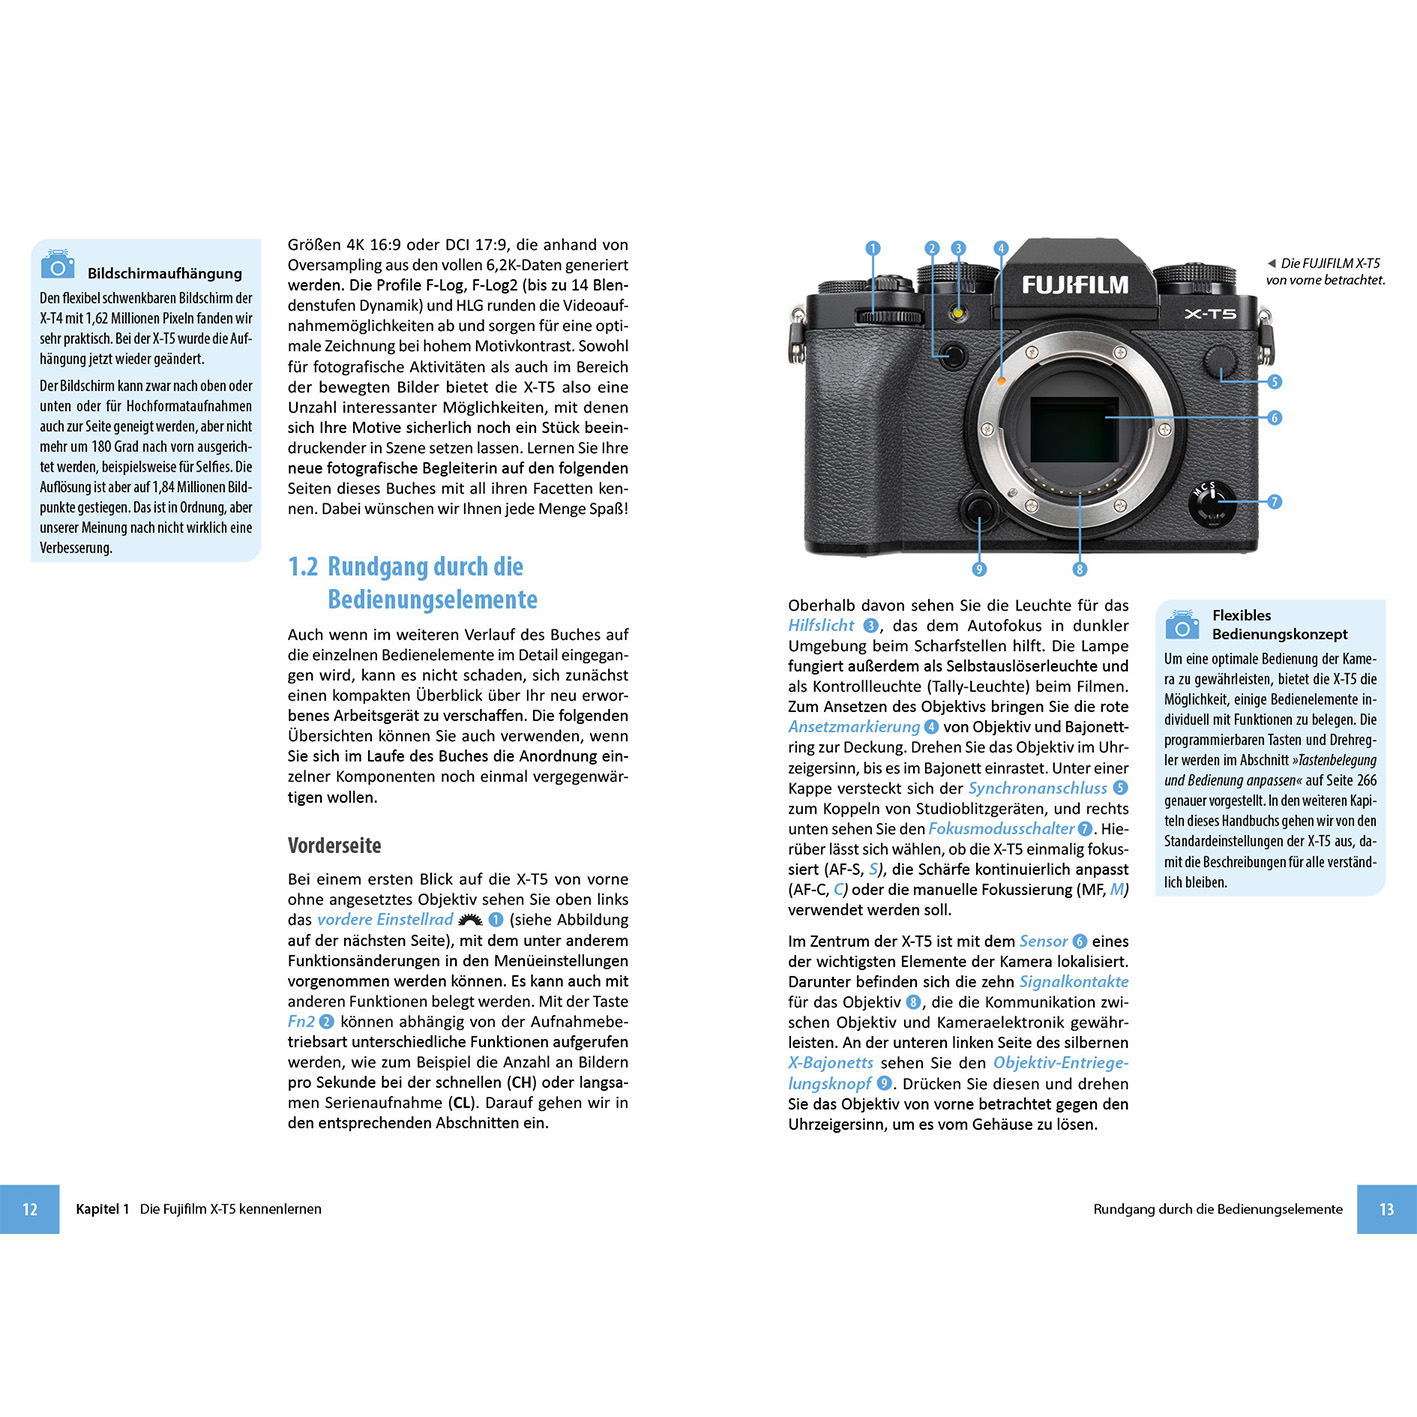 zu Das - Fujifilm Praxisbuch Ihrer Kamera X-T5 umfangreiche